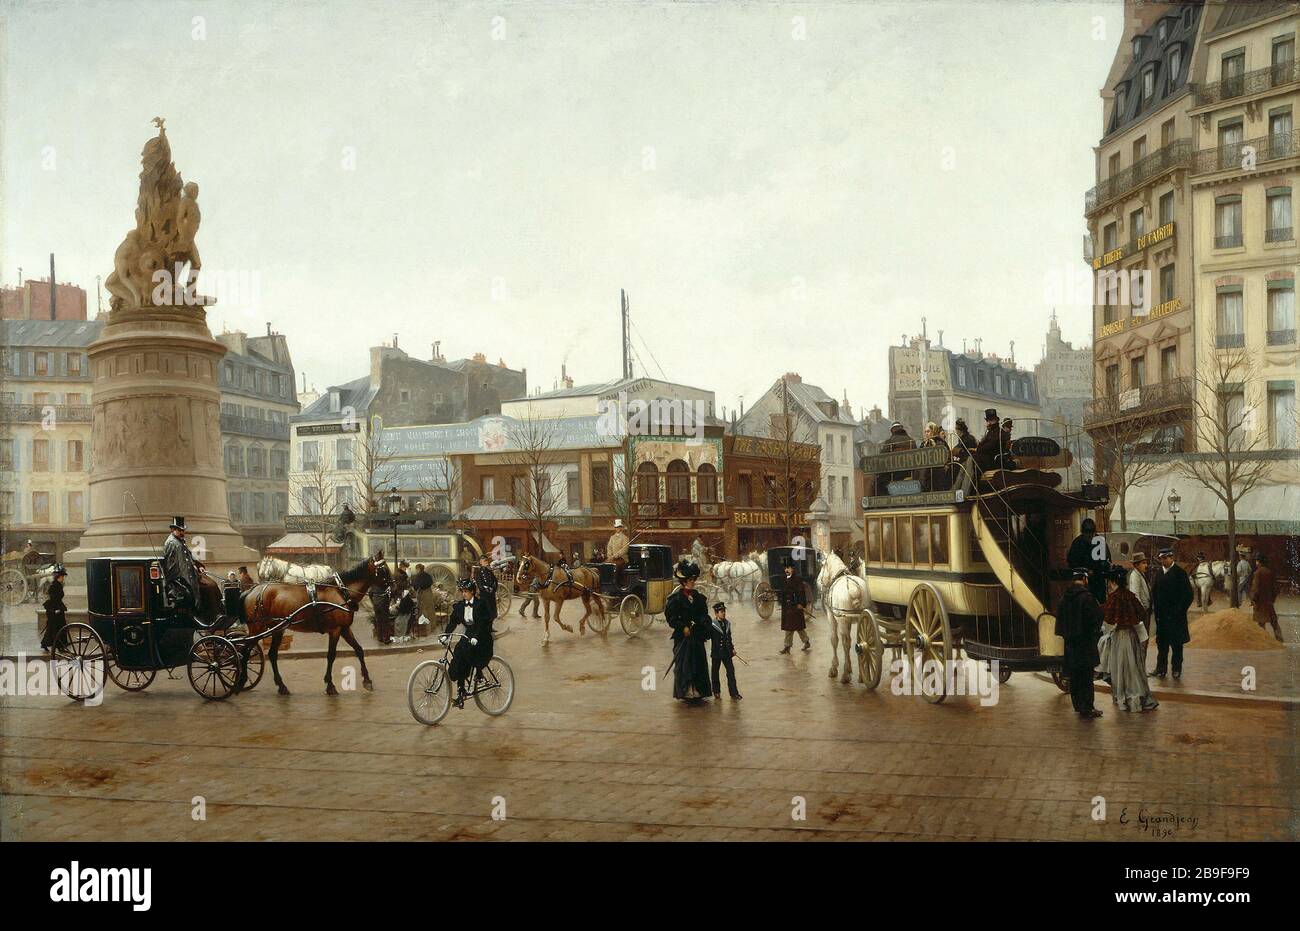 Place Clichy im Jahr 1896 Edmond Grandjean (1844-1909). 'La Place Clichy en 1896'. Huile sur toile. Paris, musée Carnavalet. Stockfoto